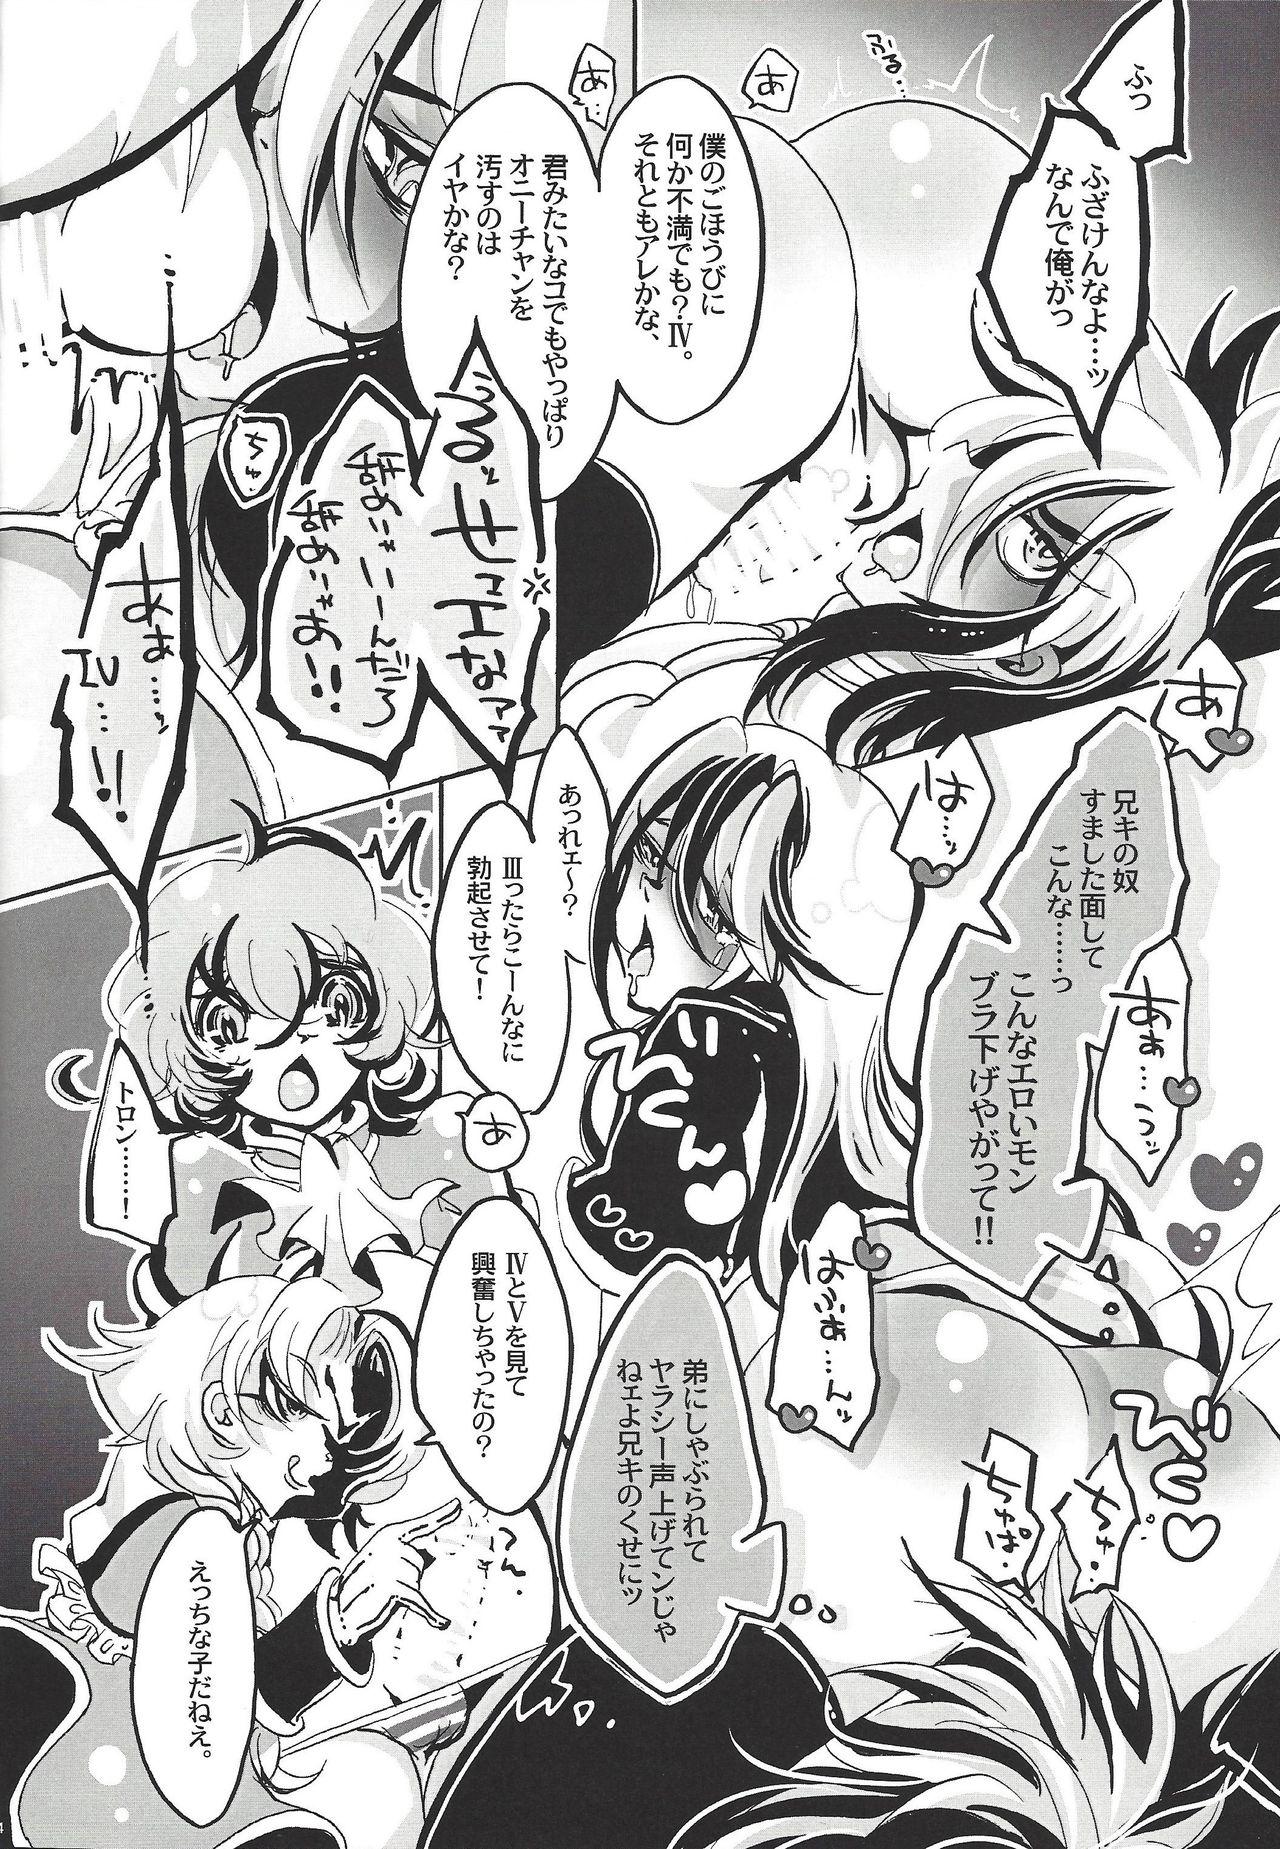 Facials Bokura, zetsubo no mayoigo ni natte - Yu gi oh zexal Pretty - Page 5